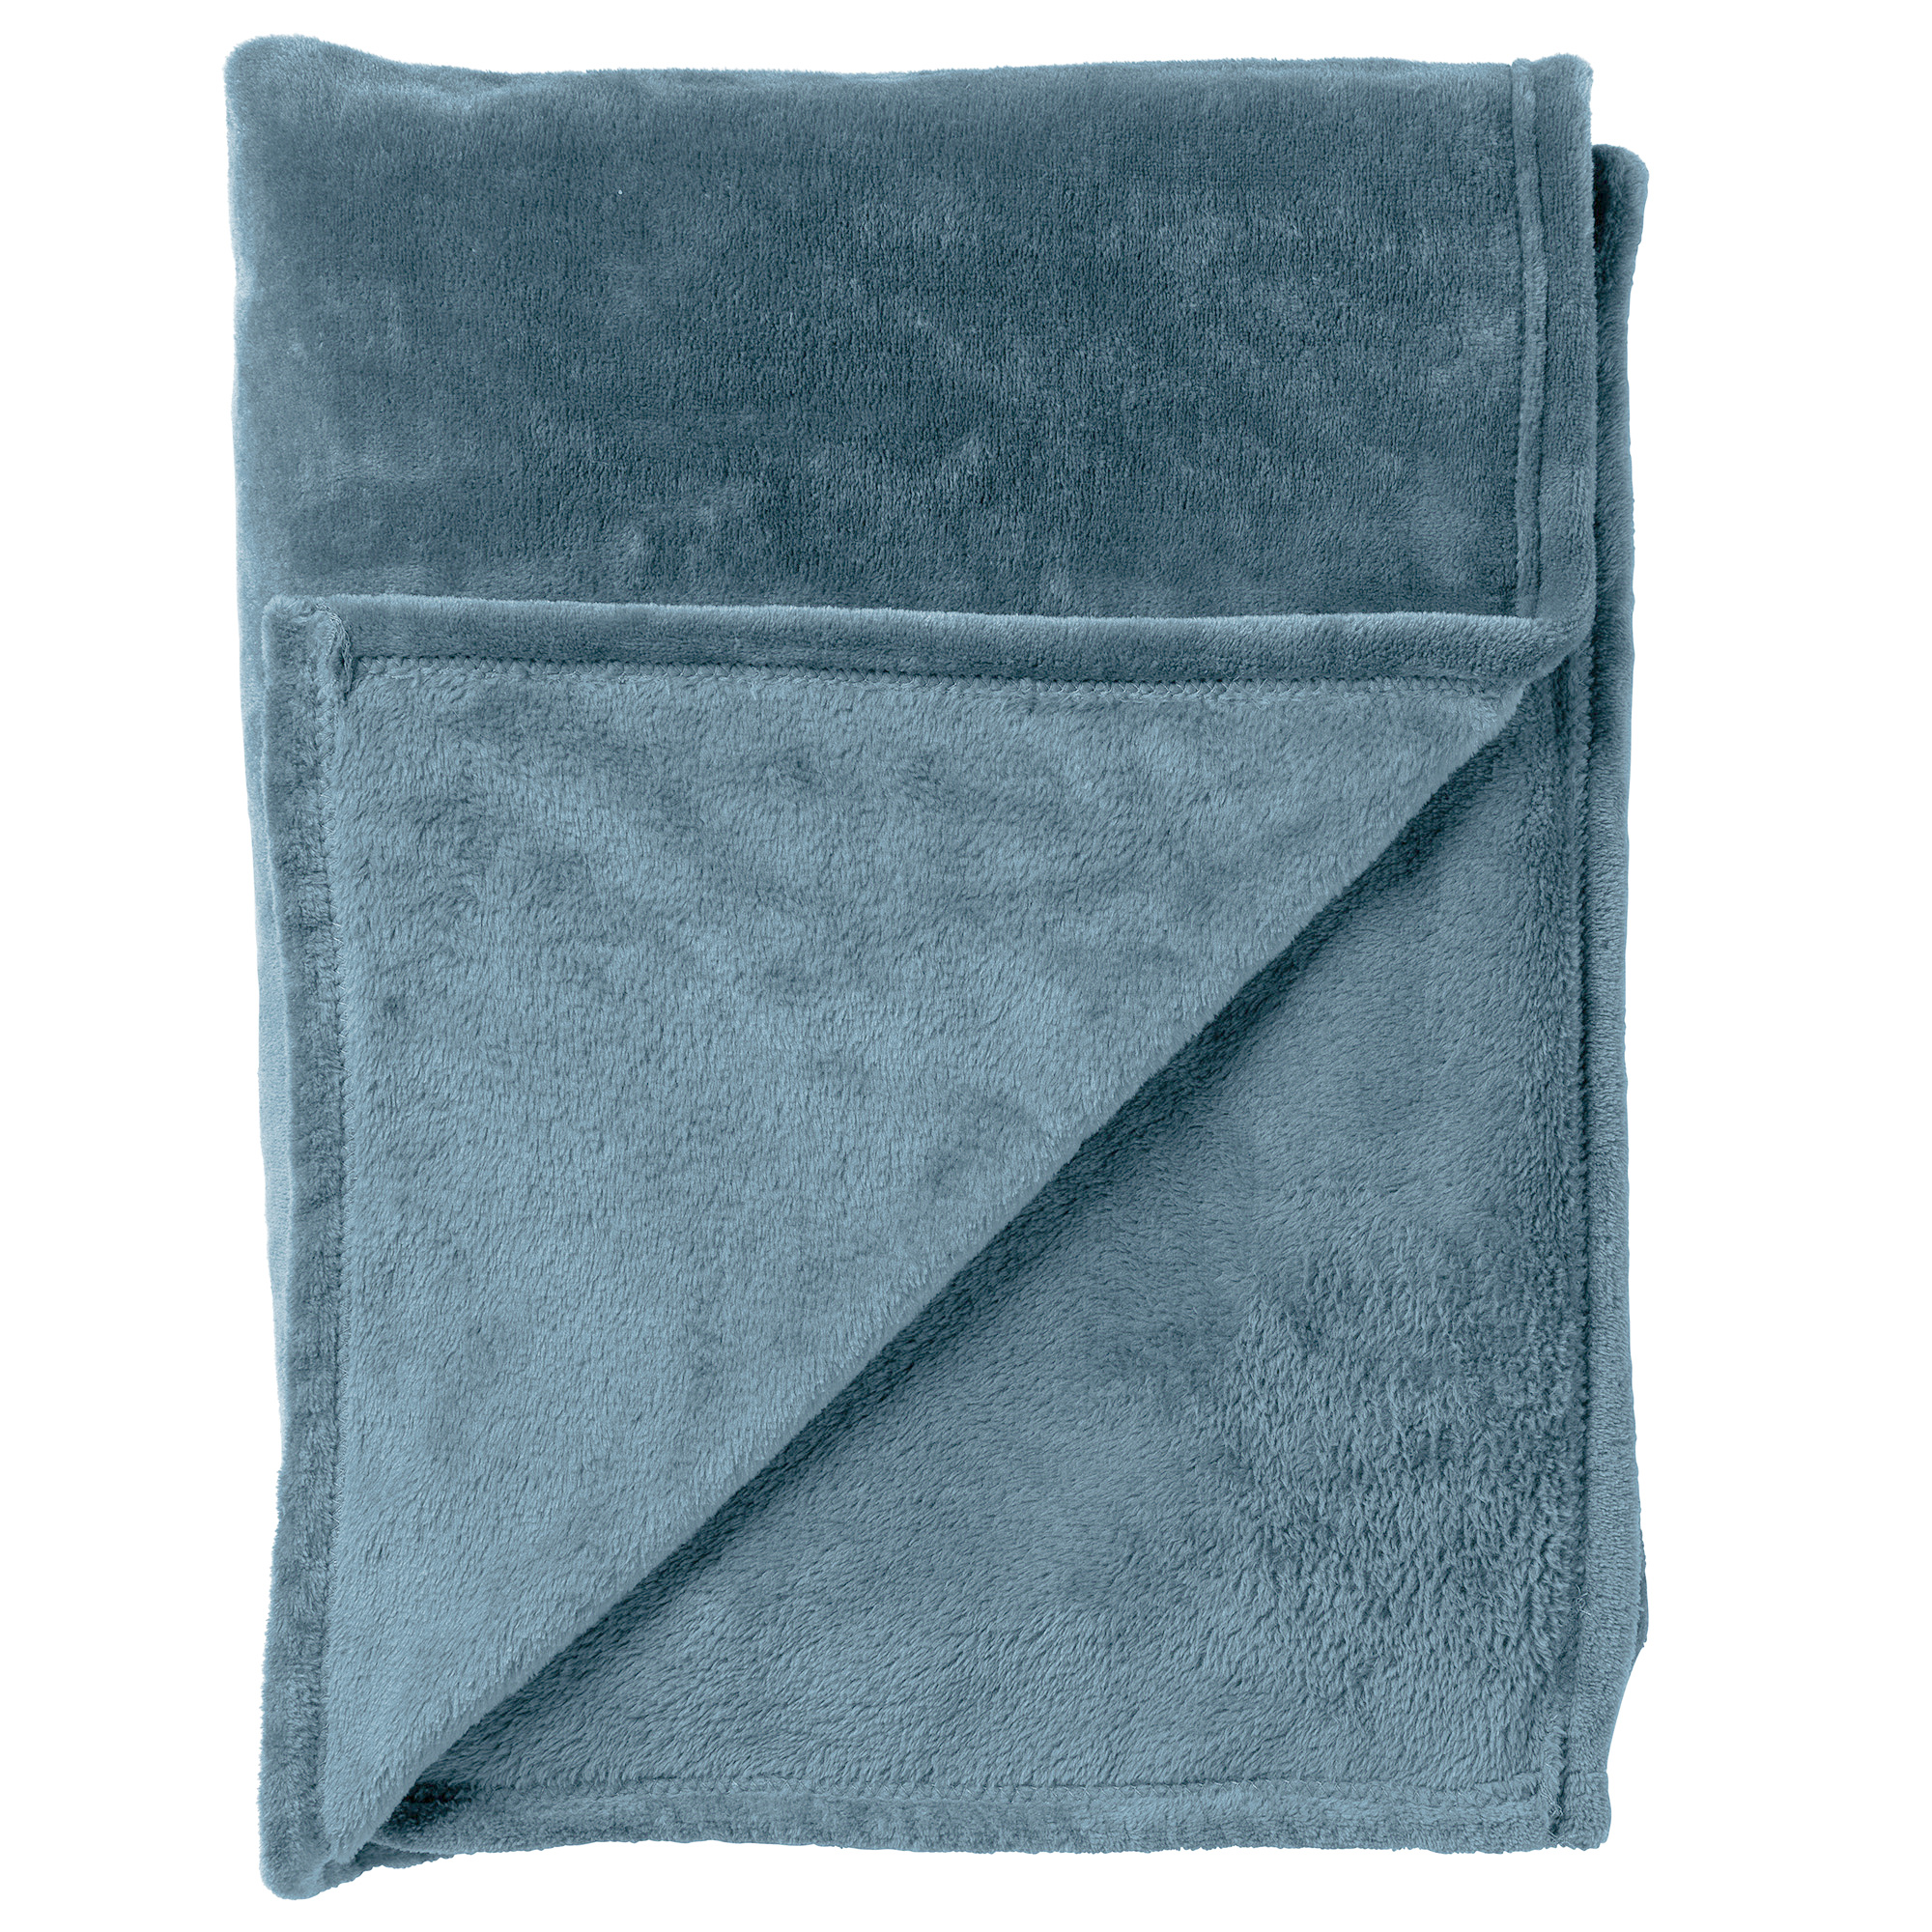 Plaid Charlie 200x220 cm | Flannel fleece |  Provincial Blue